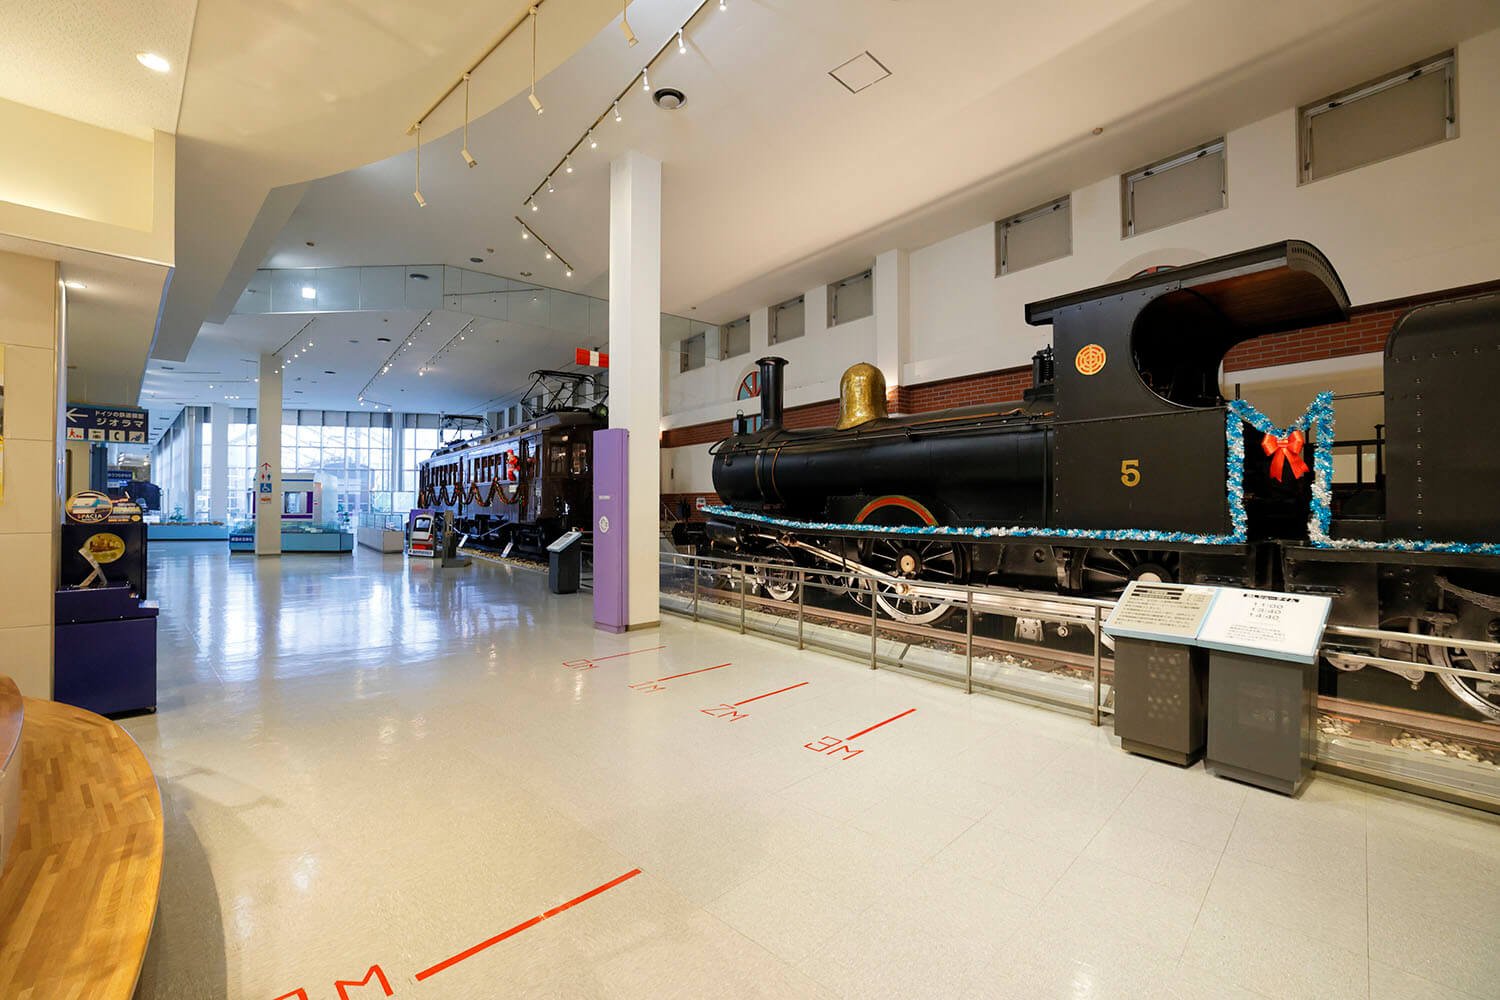 エントランスを抜けるとそこには「5号蒸気機関車」（手前）と「デハ1形5号電車」（奥）が展示されている。